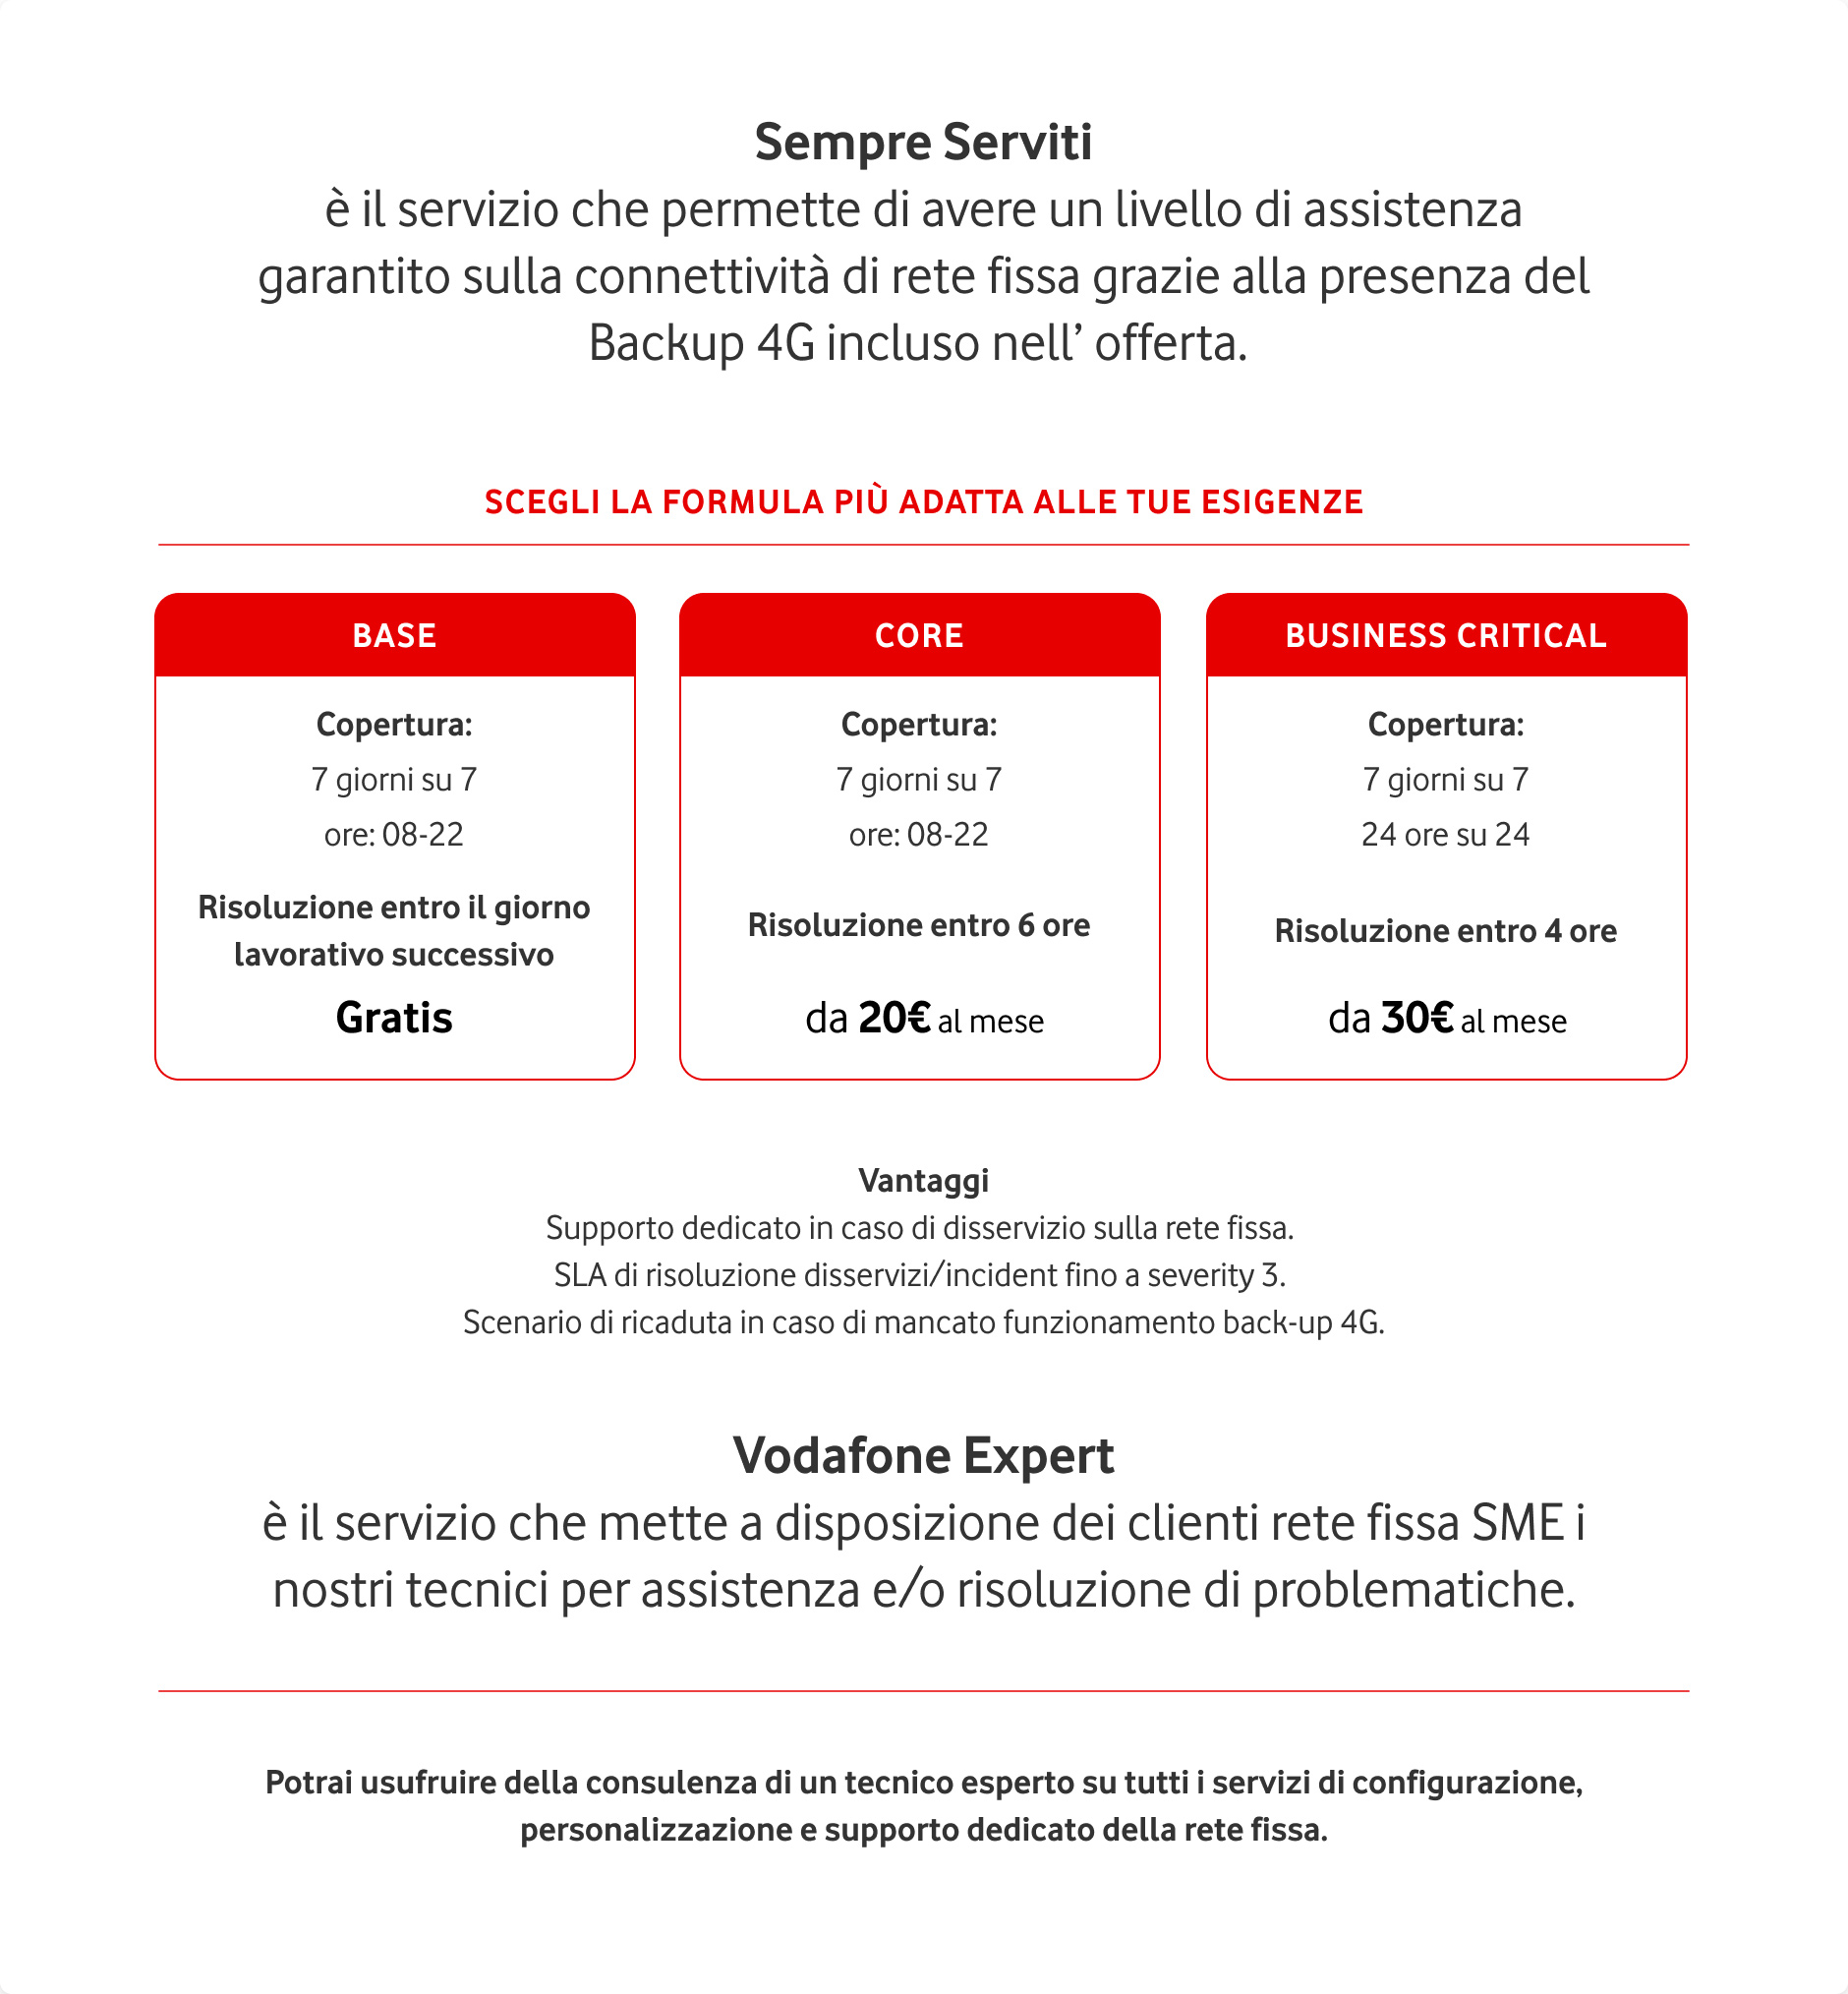 Vodafone Expert & Sempre Serviti